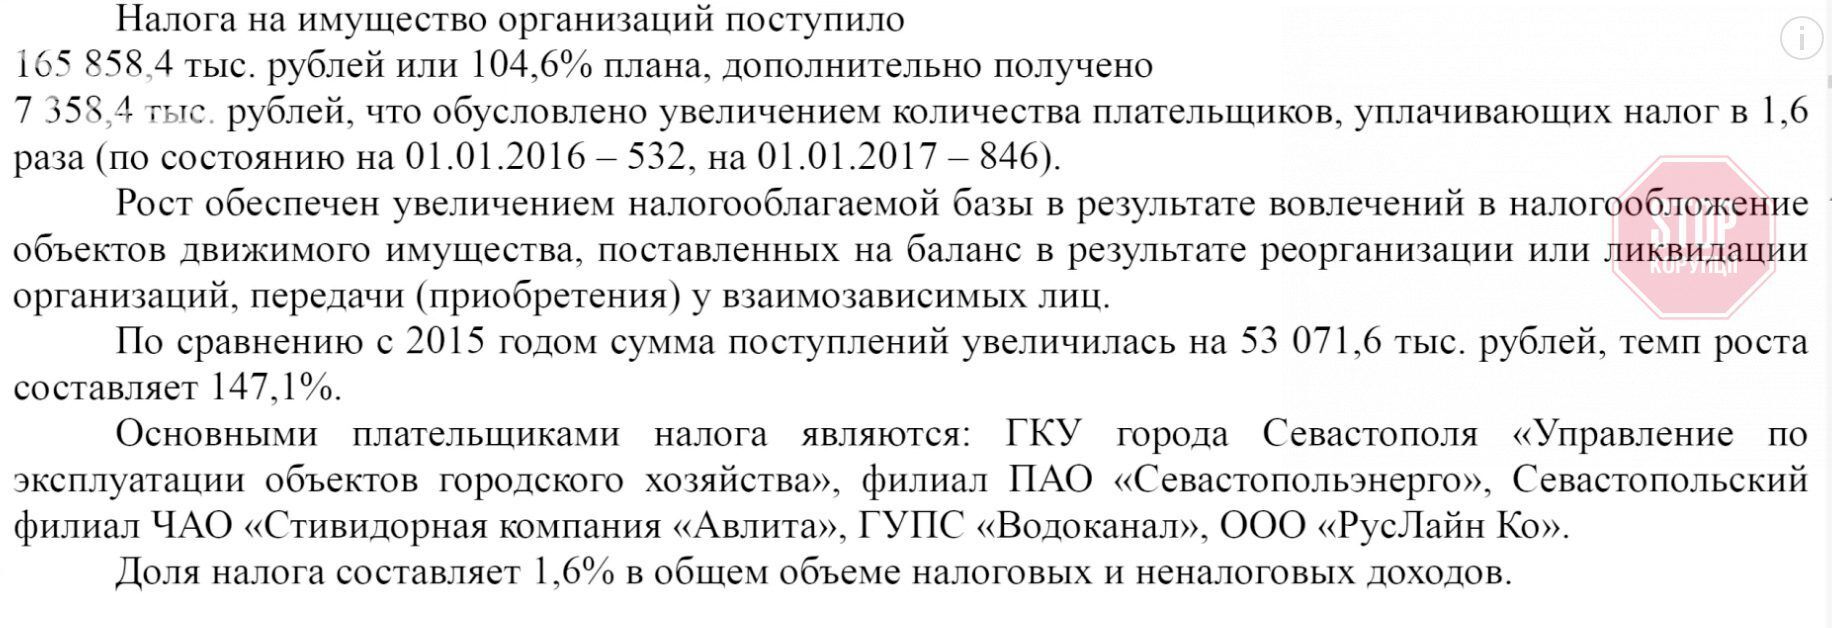  ТОВ «Руслайн Ко» платить податки окупаційній владі Севастополя Фото: скриншот